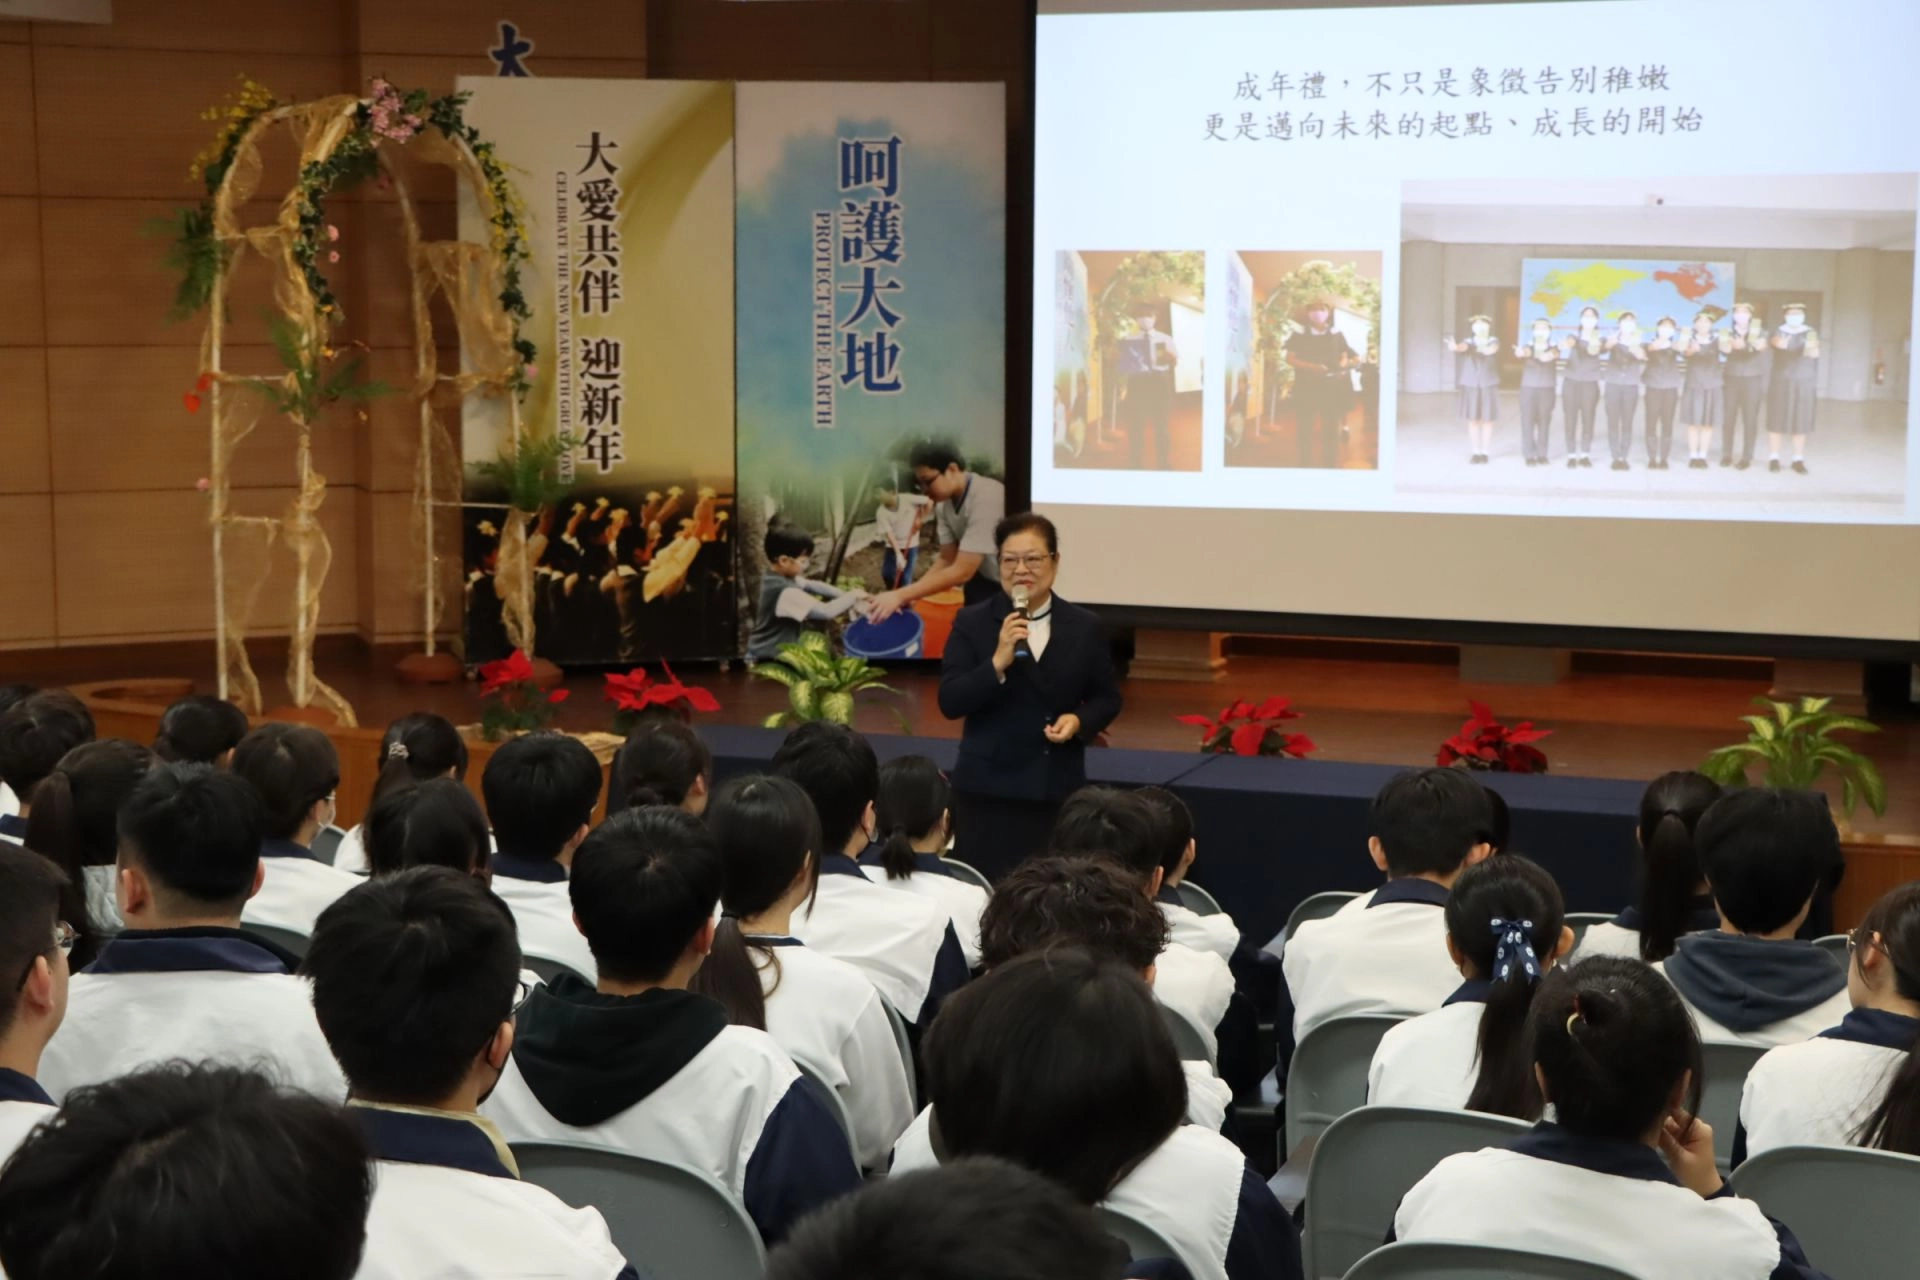 校長李玲惠對全體高三學生說明成年禮的目的-透過活動體悟到成年的意義、責任